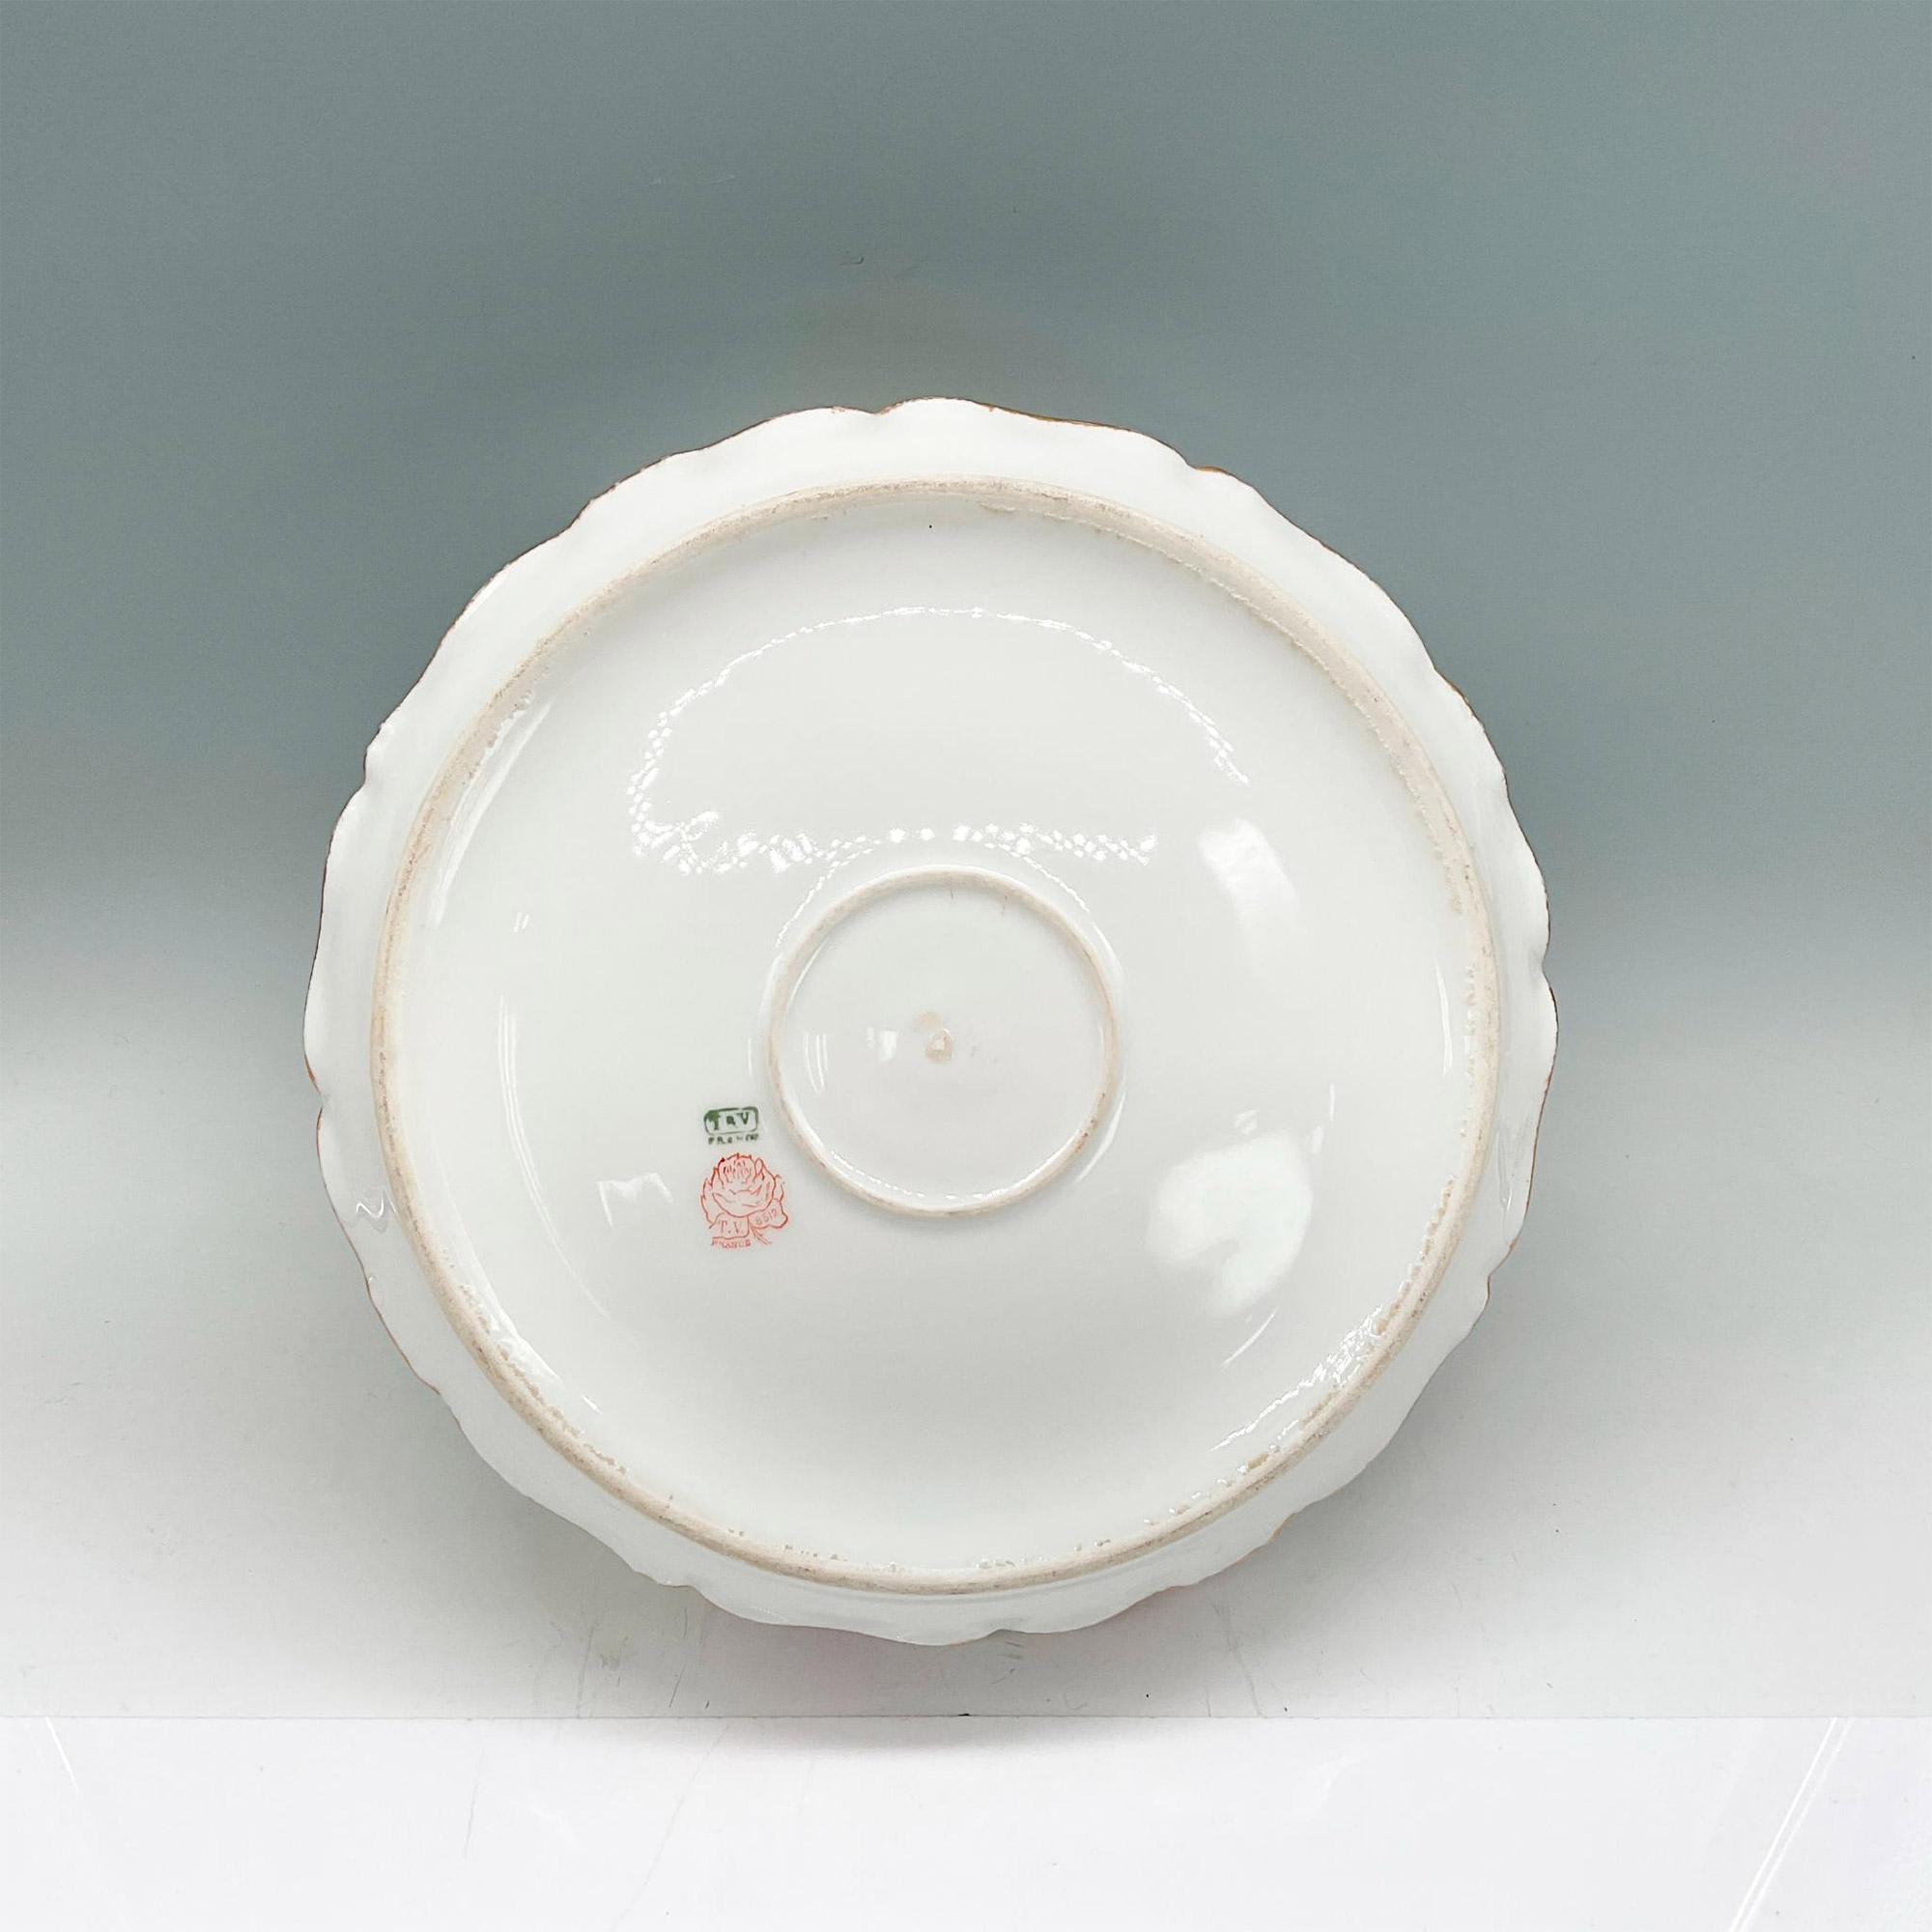 Tressemanes + Vogt Limoges Porcelain Bowl, Roses - Image 3 of 3